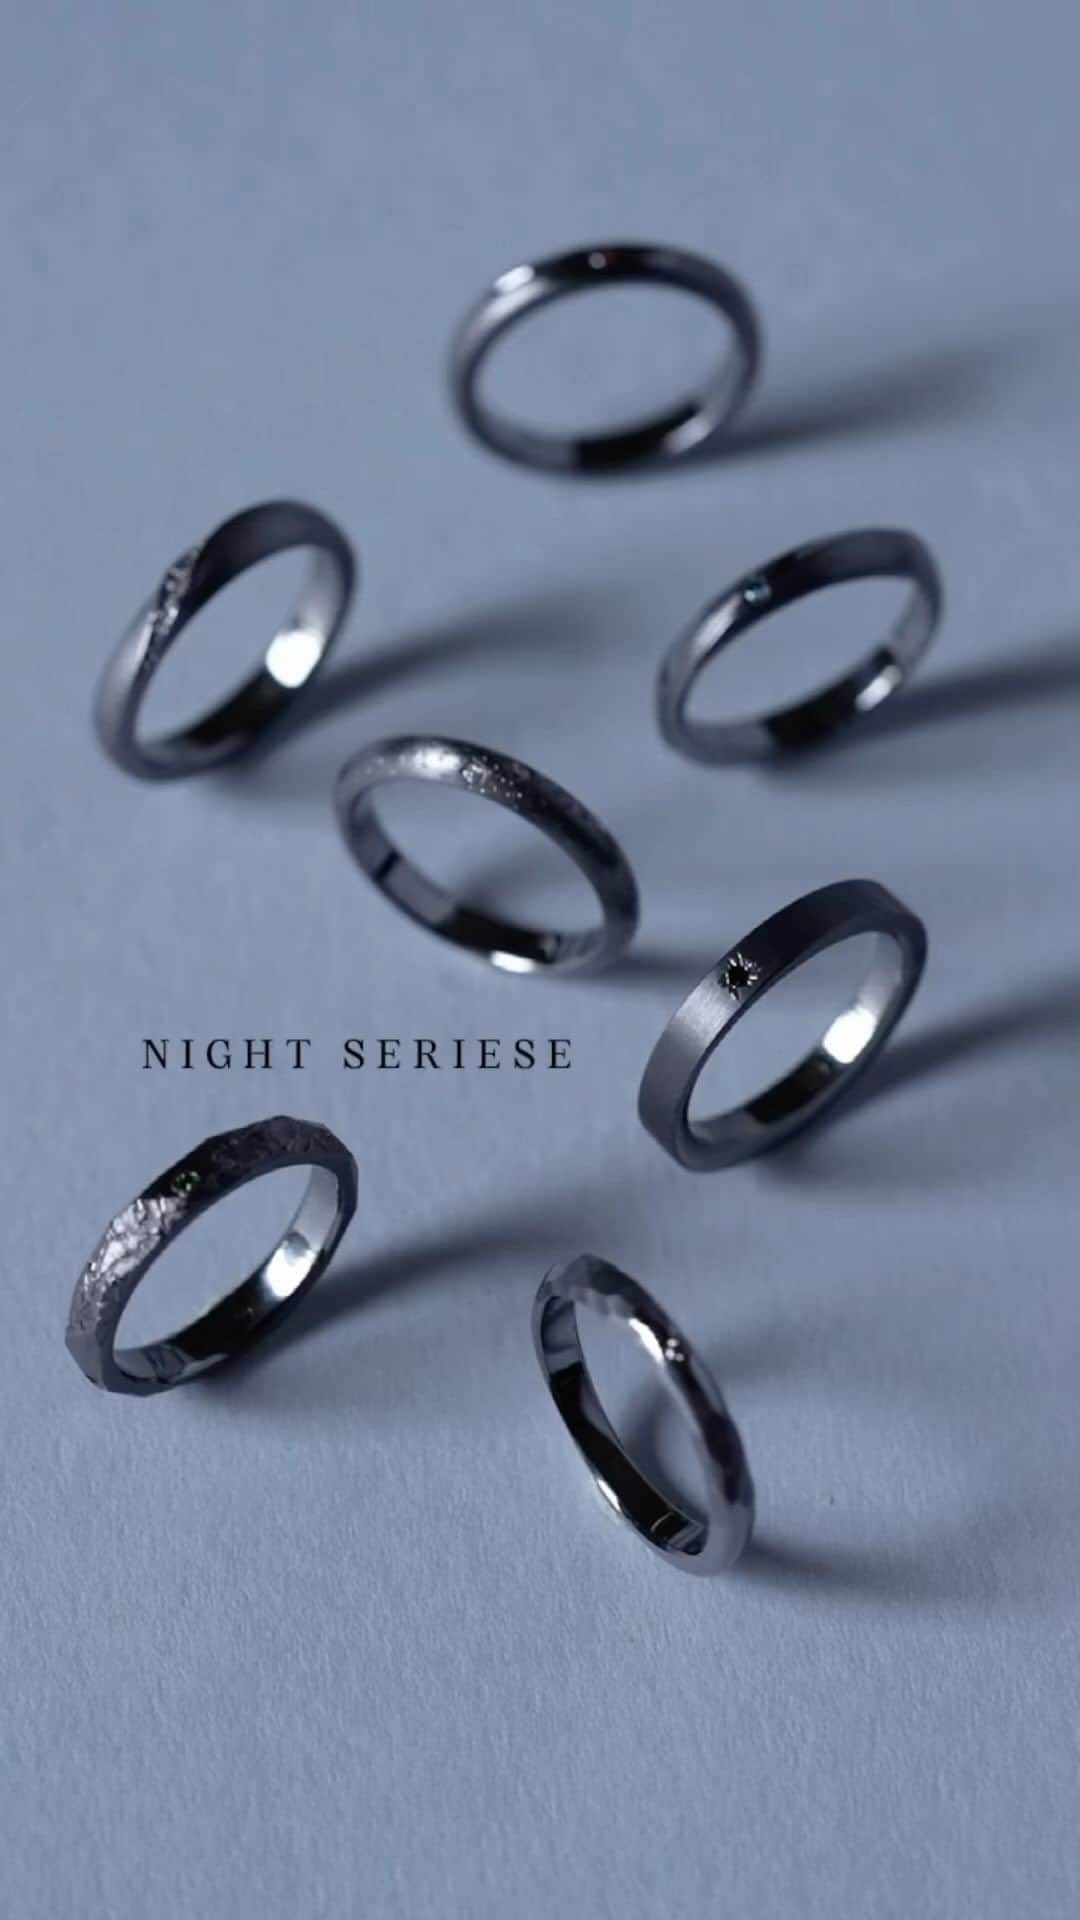 SORA ≪SORA表参道の公式アカウント≫のインスタグラム：「黒い金属 #タンタル で表現する 夜空をテーマにした結婚指輪「NIGHT SERIES」  地球と宇宙をテーマに、月が輝き、 色とりどりの星が瞬く「夜空の景色」を表現した 黒い指輪のデザインシリーズです。  全10種類から特に人気のデザイン5種類をご紹介🌟  ・ギャラクシアス 　深い暗闇に包まれてこそ見える本当の宇宙の輝き。  　無数の星々がつくる光の帯、天の川銀河。  ・トロー 　太陽と月が創る幻想的な天文現象、皆既日食。 　周りにゆらめく光によって漆黒の影が浮かび上がる。  ・プトーシ 　時を超えて出会う、流星の瞬き。  　二人で過ごすかけがえのない時間を、 　一瞬の奇跡になぞらえて。  ・アステリ 　夜空に瞬く星々に囲まれて、寄り添い合う星。 　祝福の光に包まれながら永遠を誓う。  ・シンディオ 　夜の森を照らす、柔らかで神秘的な光。  　木々の間から差し込む光は二人を導く道しるべに。  SORAが指輪の中に生み出す幻想的な世界を、 ぜひ体感してみませんか？  NIGHT SERIES 取扱店 ￣￣￣￣￣￣￣￣￣￣￣￣ ・SORA表参道本店 ・SORA札幌店 ・全国の一部取扱店 ・SORA公式オンラインショップ >>>https://www.sora-w.com/online/  SORAのタンタルについて ￣￣￣￣￣￣￣￣￣￣￣￣ 黒い指輪として人気急上昇中のタンタルは、 SORAが世界で初めて結婚指輪の素材として 使用したレアメタルのひとつ。  資源循環へ取り組んでいるSORAでは現在、 都市鉱山から再生されたタンタルを使用して 指輪づくりをおこなっています。  また、金属アレルギーが起きにくいことから 末永く身に着ける結婚指輪にふさわしい素材です。  - - - - - - - - - - - - - - - - - - - -   🟩LINEでもデザインのご相談が可能です >>>「SORA」と検索！  公式アカウントをお友だち登録して メッセージを送ってください  SORA表参道本店のデザイナーがご返信します💁‍♀️  - - - - - - - - - - - - - - - - - - - -   SORA公式サイトや店舗情報は アカウントTOPのURLからcheck * >>> @sora_omotesando  ぜひハッシュタグをつけて SORAの写真を投稿してください♪ >>> #結婚指輪SORA  デザイナー、クリエイターが皆さんの投稿を拝見し 毎日パワーをいただいています🌿  - - - - - - - - - - - - - - - - - - - -   #結婚指輪 #婚約指輪 #ペアリング #金属アレルギー対応リング #オーダーメイド結婚指輪 #オーダーメイド婚約指輪 #結婚指輪オーダーメイド #婚約指輪オーダーメイド #結婚指輪探し #結婚指輪シンプル #マリッジリング #ブライダルリング #プレ花嫁 #プレ花婿 #2024wedding #黒い結婚指輪 #ブラックリング #黒い指輪 #blackring #blackjewelry #タンタルリング #コンフリクトフリータンタル #コンフリクトフリー #コンフリクトフリーメタル #ブラックウェディング #黒好きな人と繋がりたい」